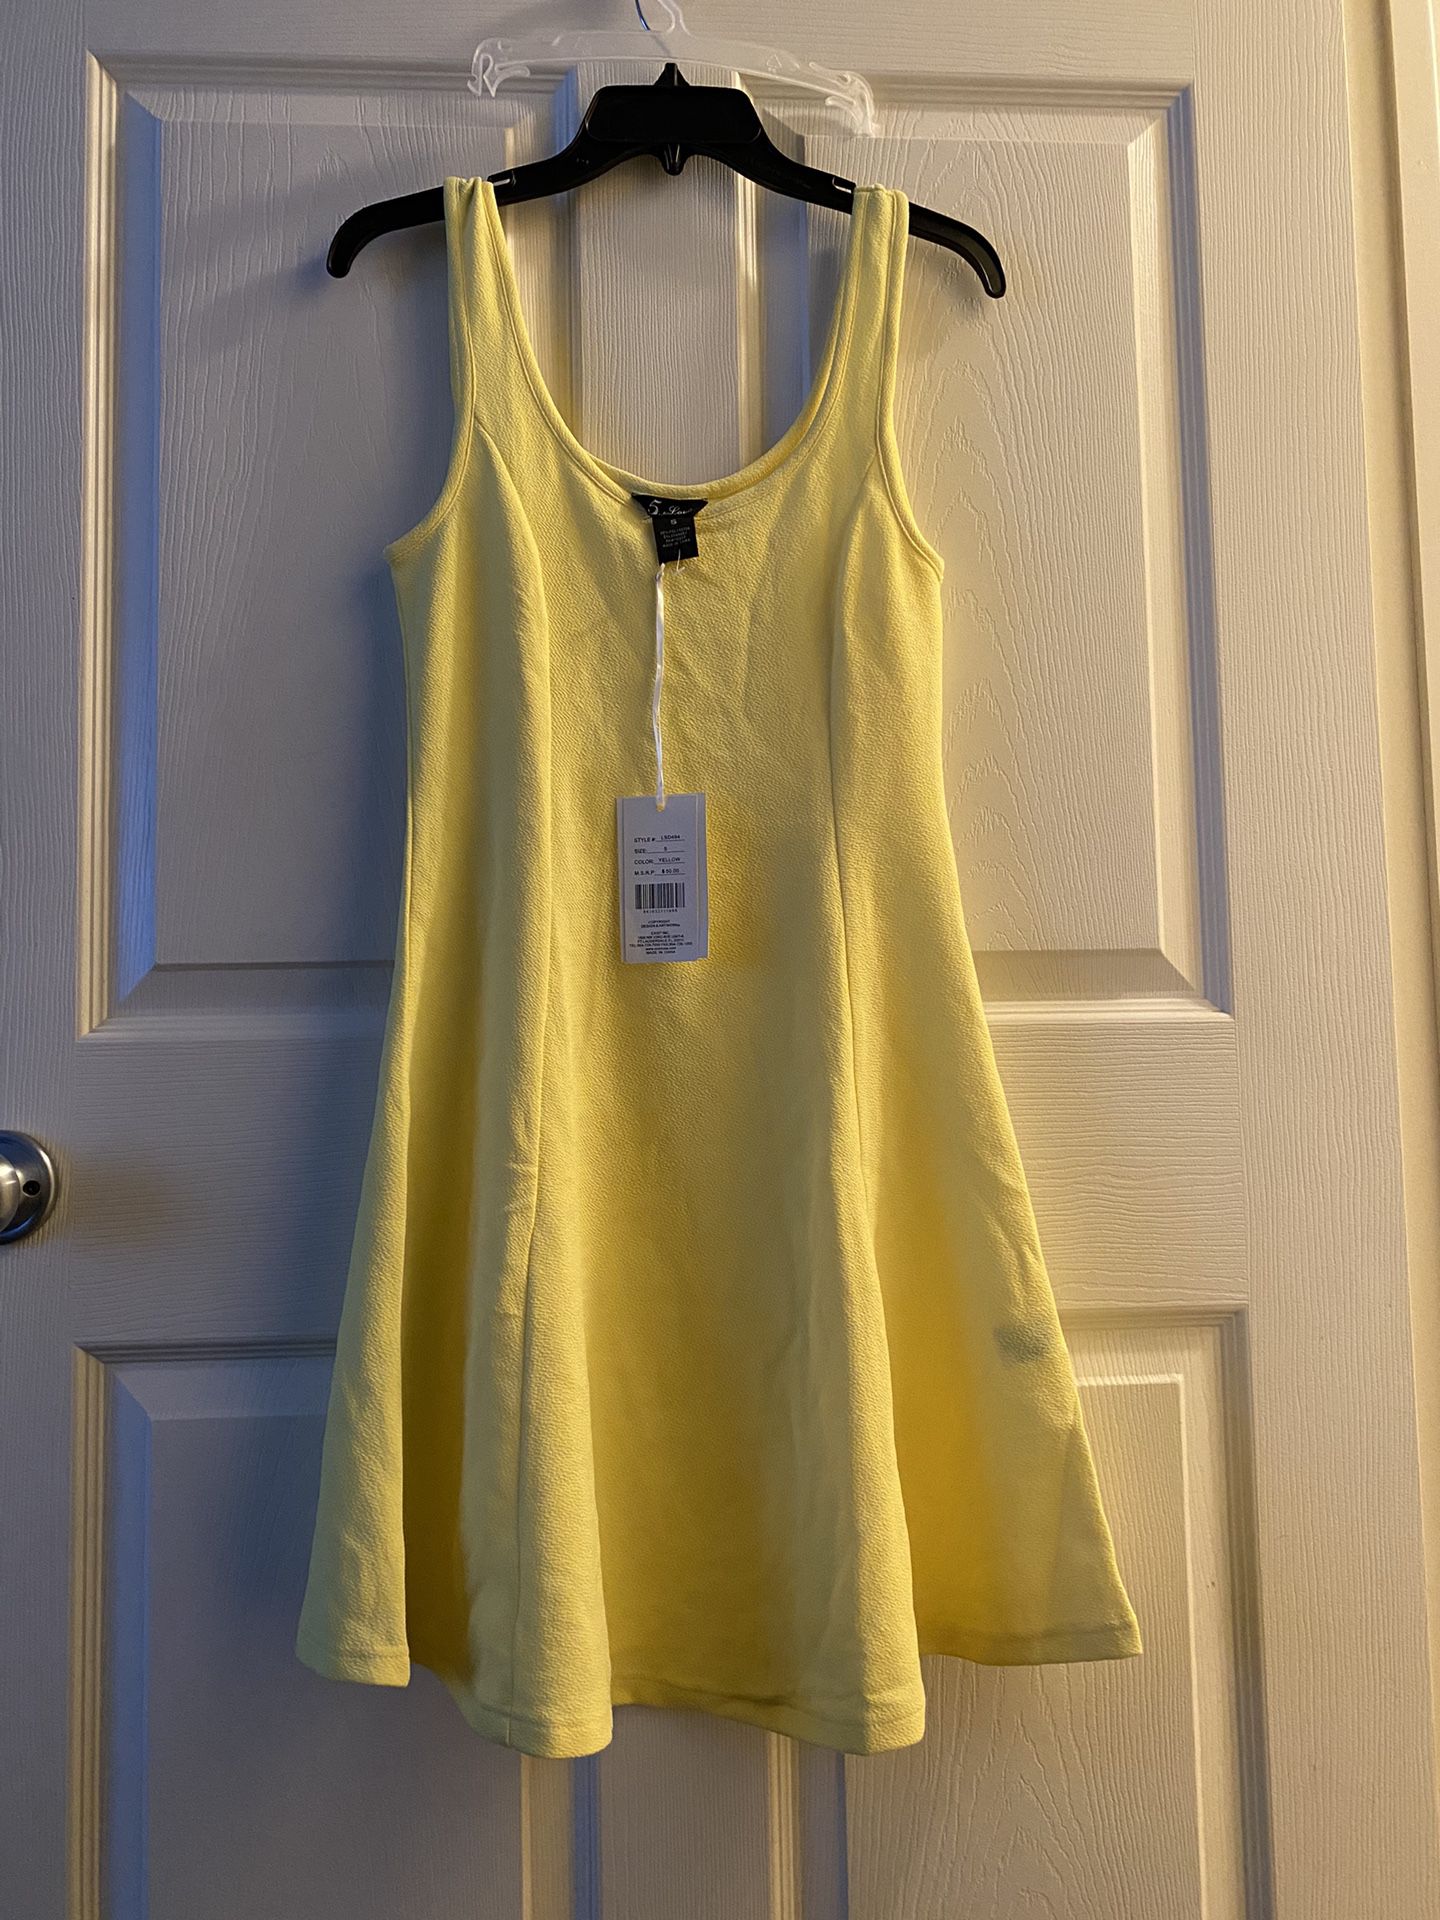 New Women’s Yellow Dress